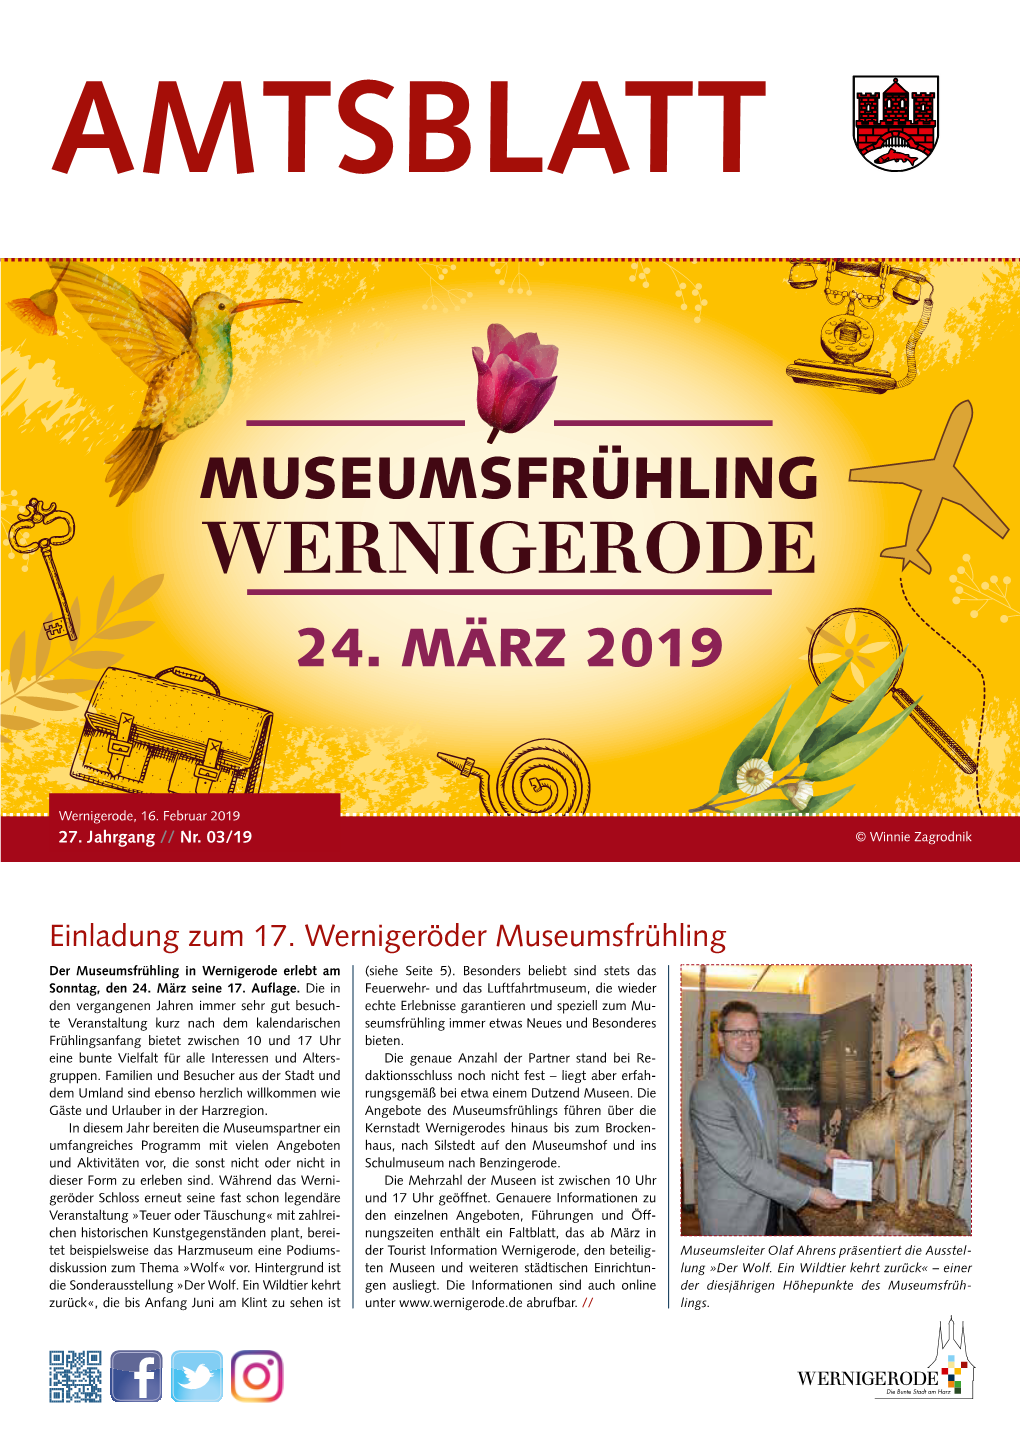 Museumsfrühling Wernigerode 24